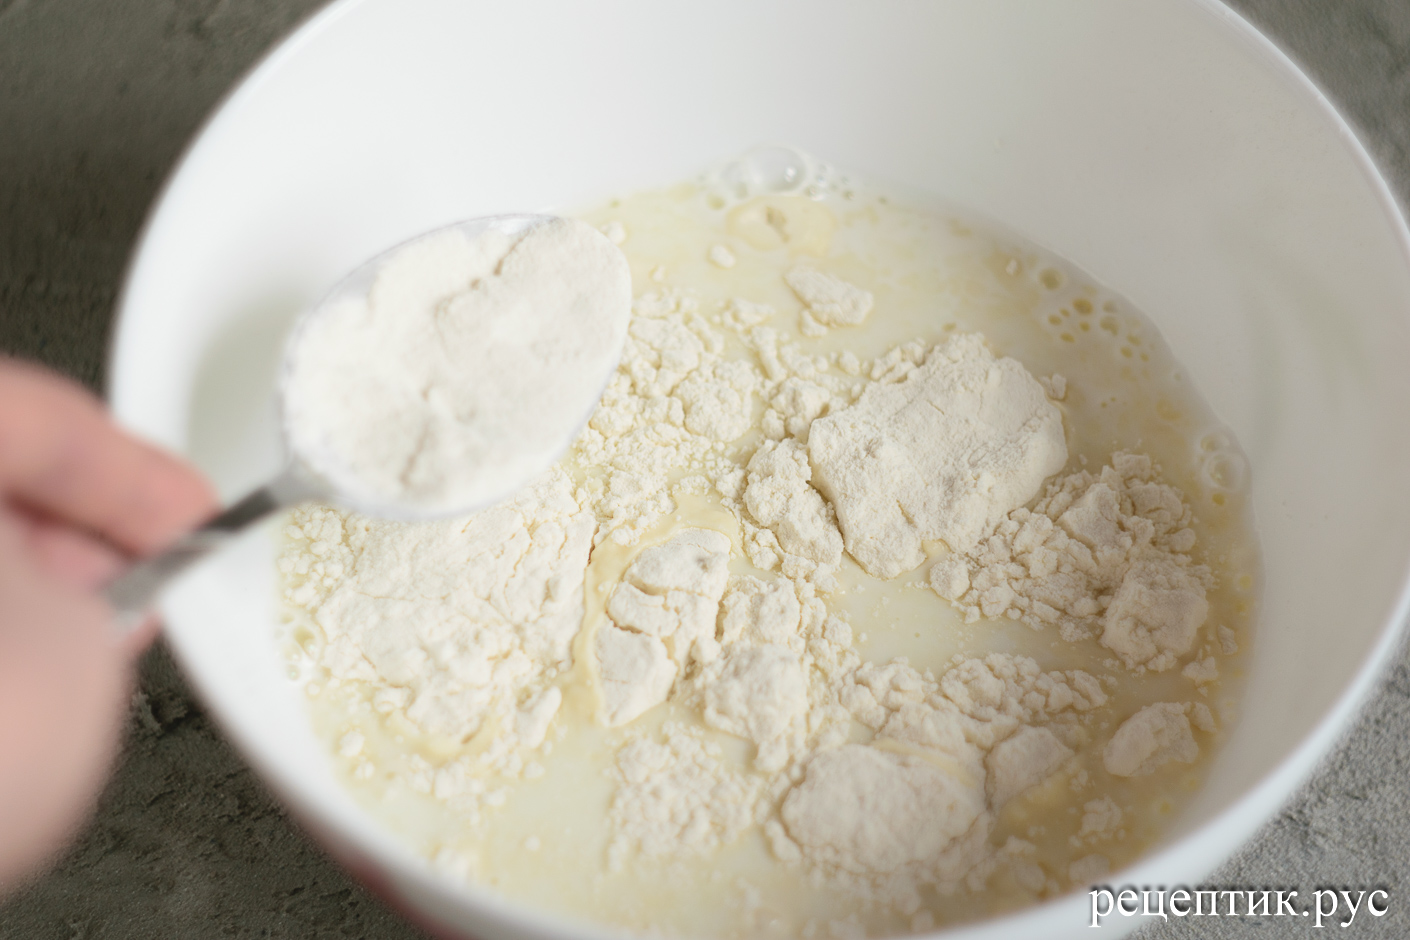 Булки дрожжевые молочные (выпекаются в молоке) - рецепт с фото, шаг 1